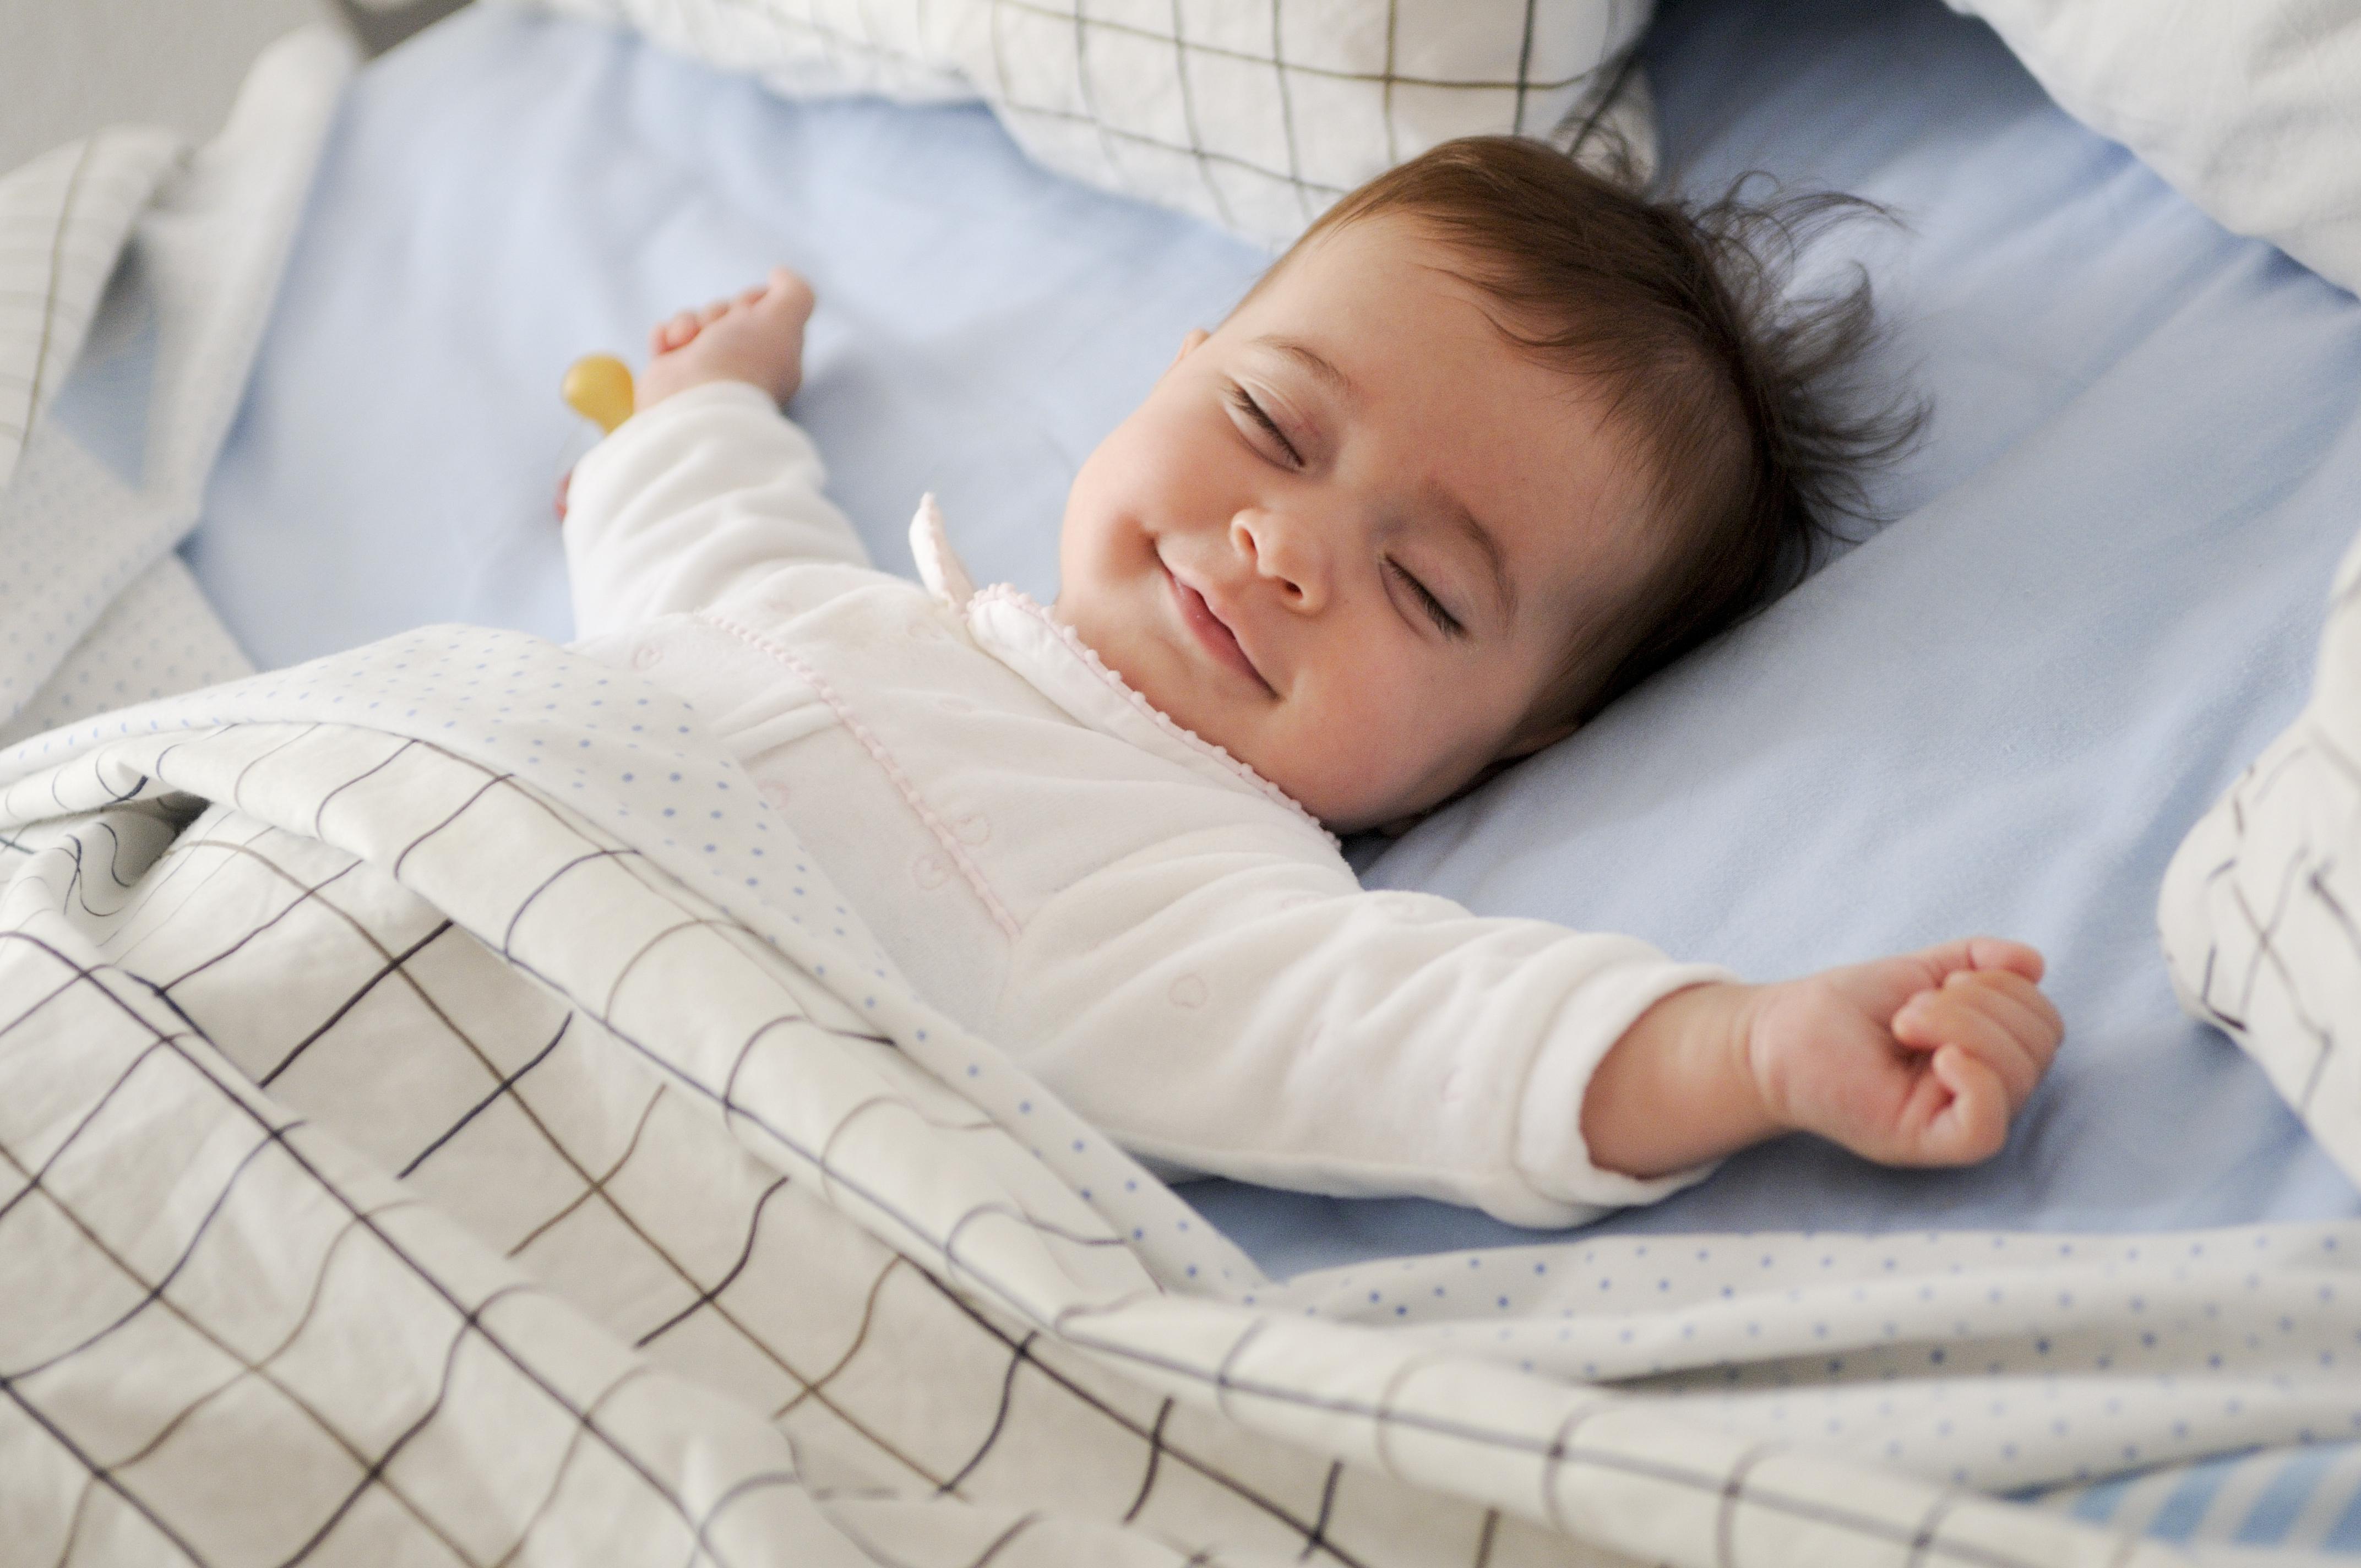 Giấc ngủ của trẻ sơ sinh là một yếu tố cực kỳ quan trọng trong quá trình phát triển của bé. Cùng xem bức ảnh đáng yêu này và khám phá những cách thức đơn giản nhưng hiệu quả để giúp bé có giấc ngủ ngon và sâu hơn.